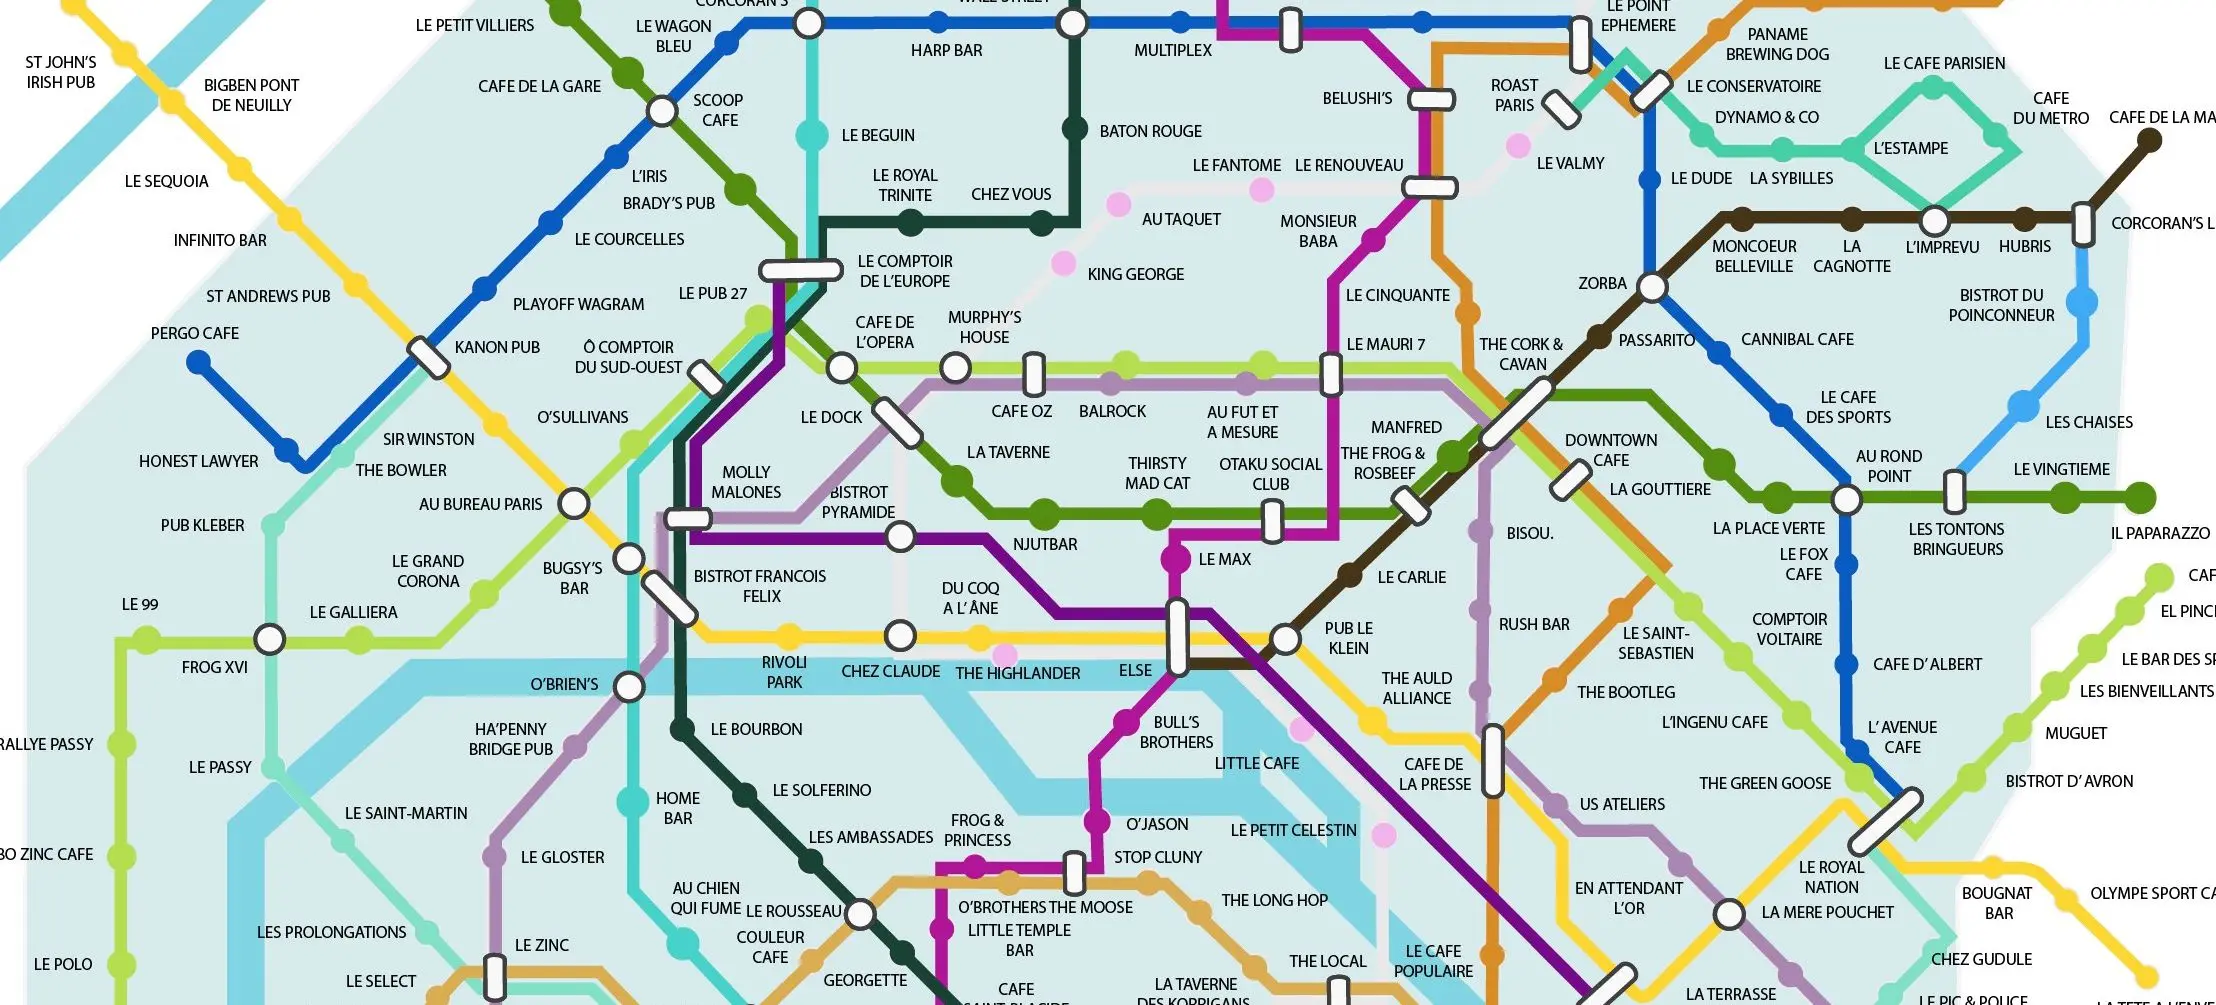 En images : voici un plan du métro parisien qui répertorie par station les bars qui diffusent la Coupe du Monde